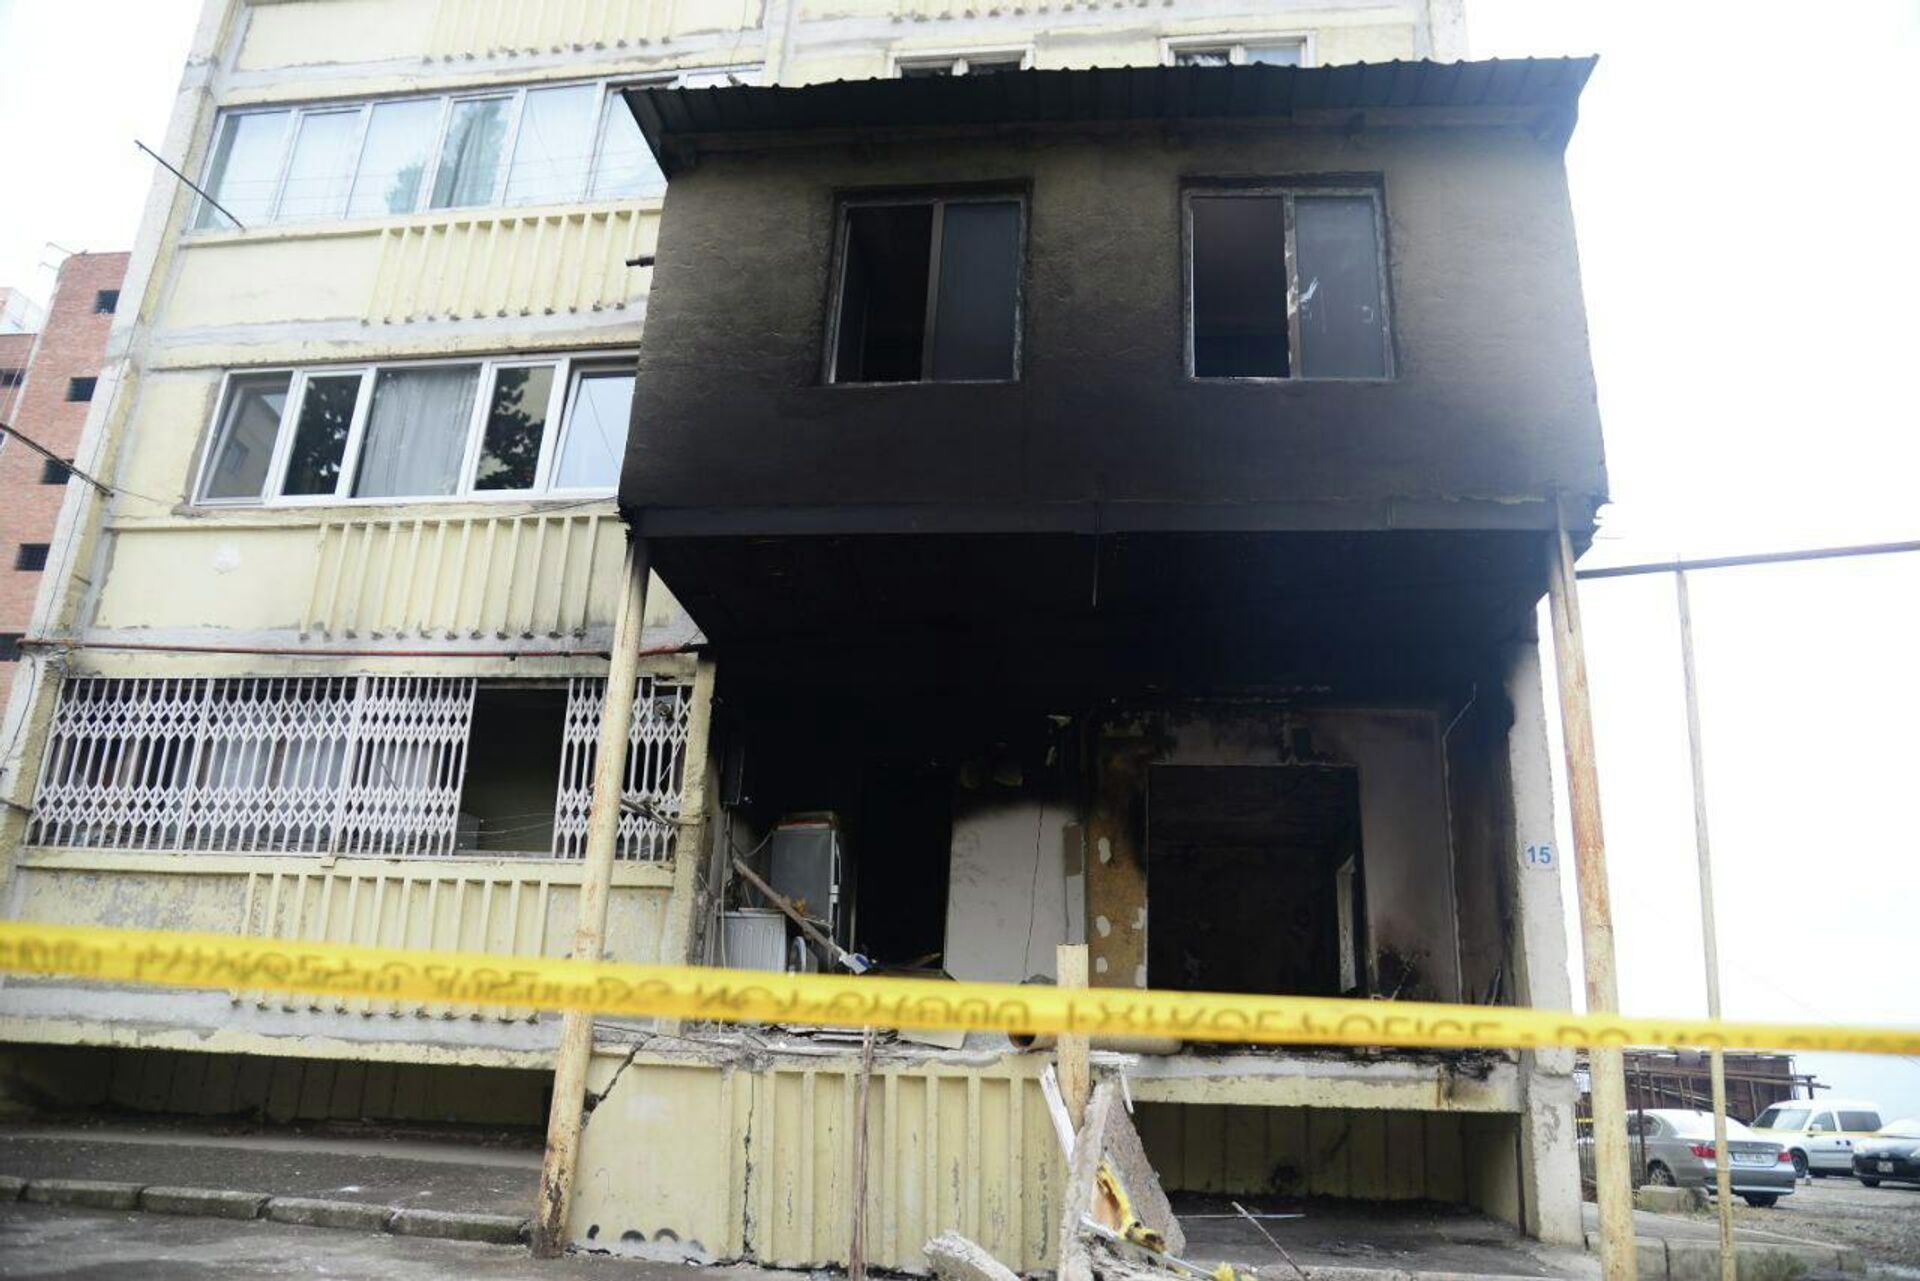 Последствия взрыва в жилом доме в районе Вазисубани в столице Грузии, 20 декабря 2021 года - Sputnik საქართველო, 1920, 20.12.2021